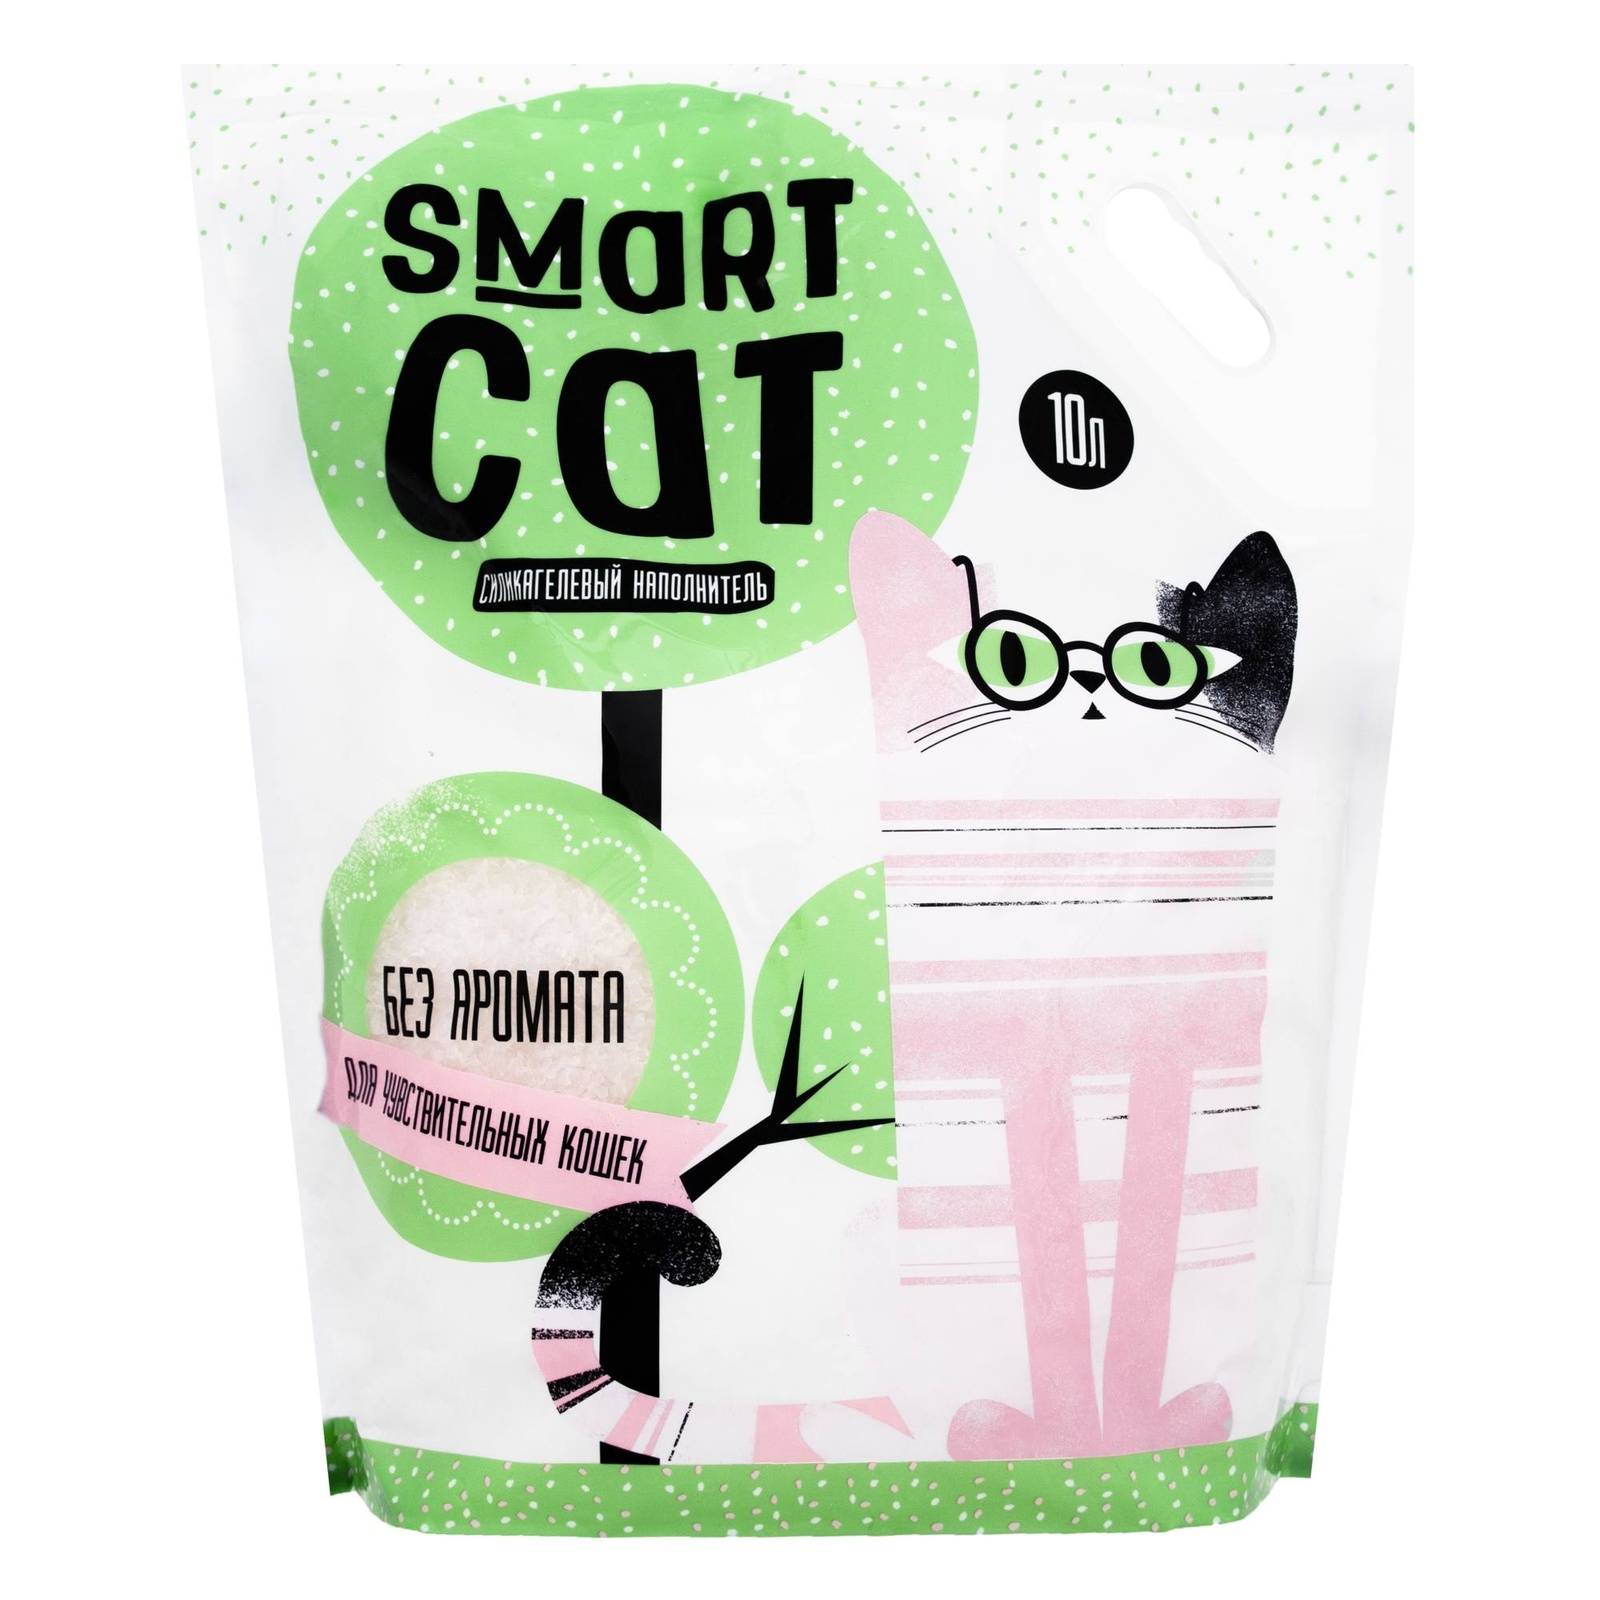 Силикагелевый наполнитель для чувствительных кошек, без аромата (3,32 кг) Smart Cat наполнитель Силикагелевый наполнитель для чувствительных кошек, без аромата (3,32 кг) - фото 3